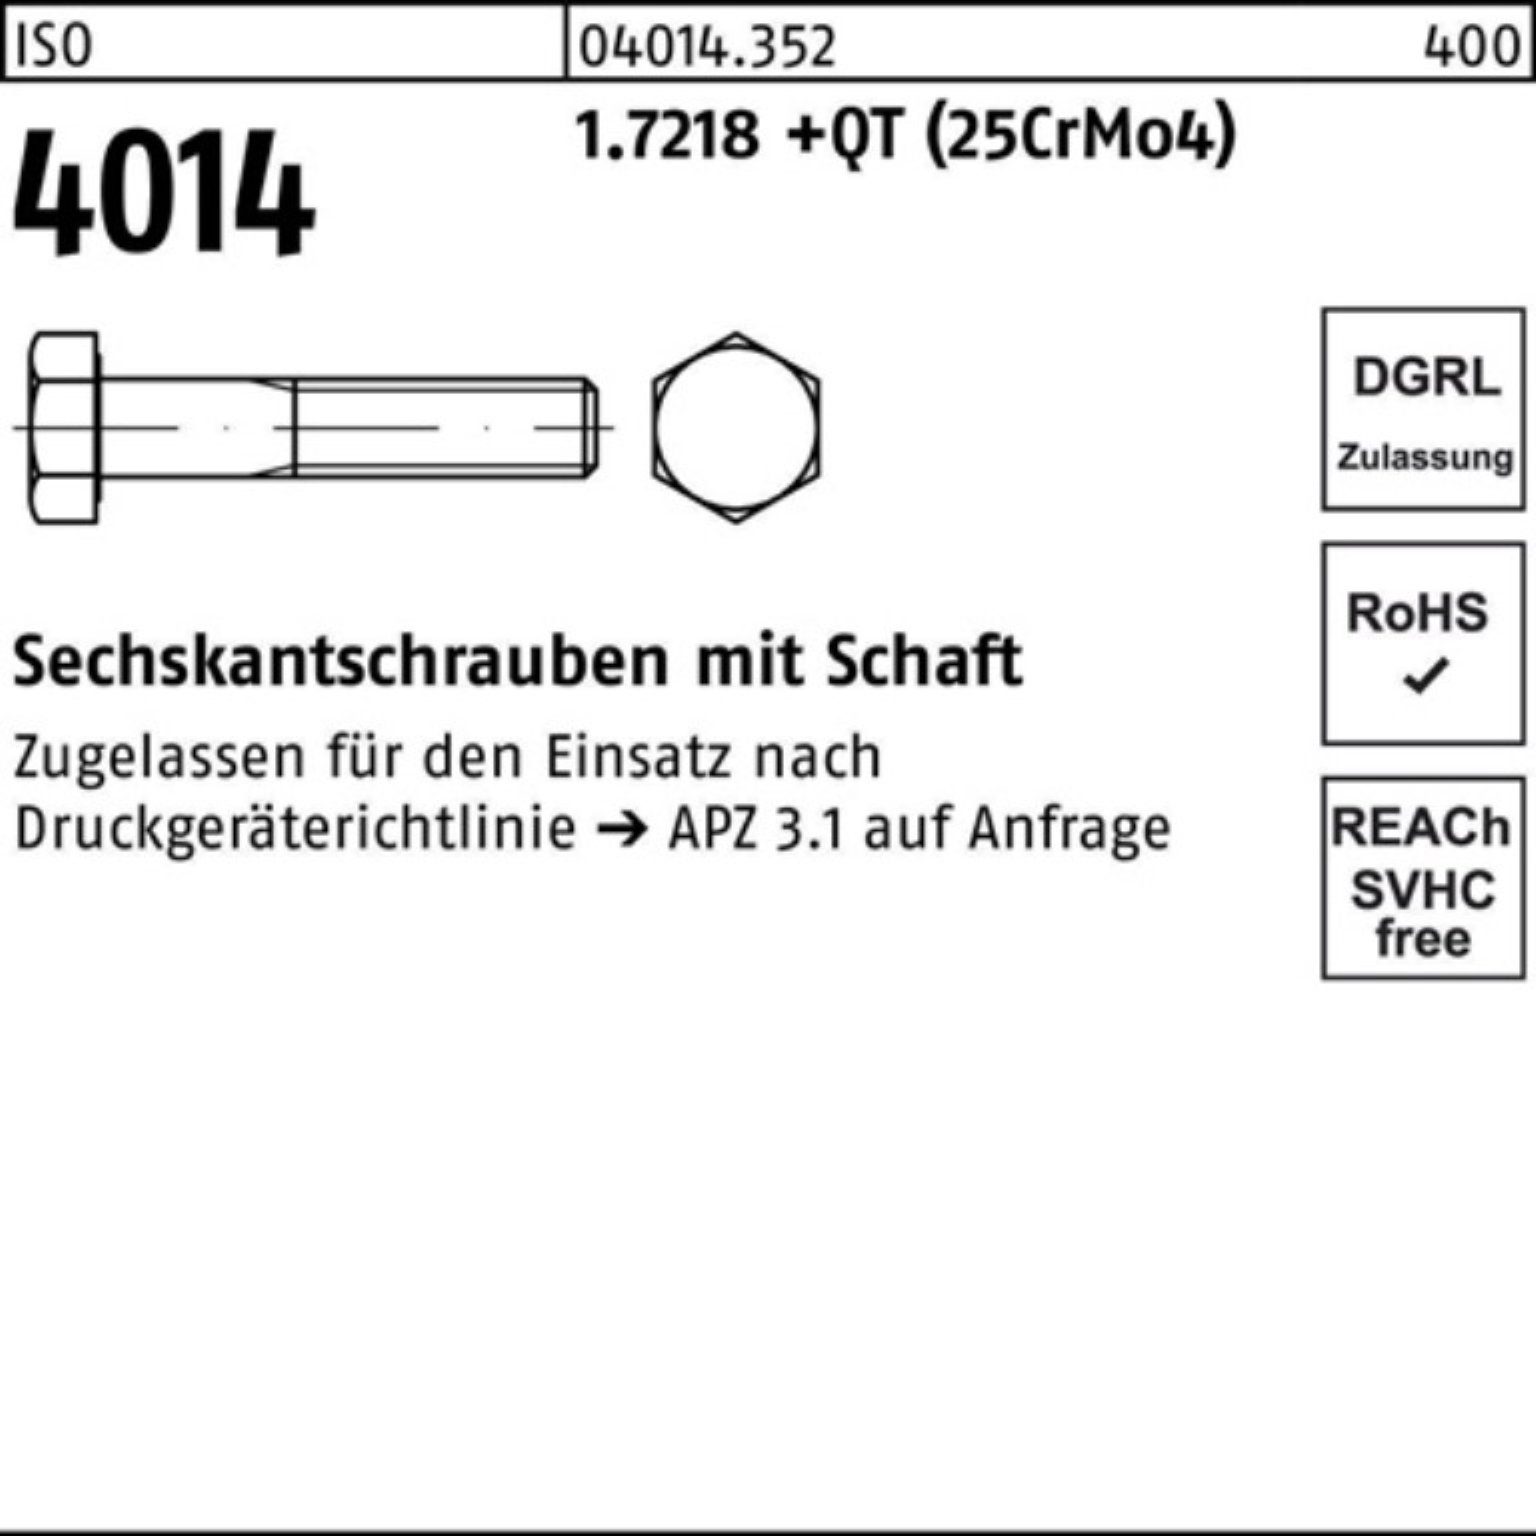 Sechskantschraube Sechskantschraube Bufab +QT Schaft 1.7218 (25Cr 100er 100 Pack M12x 4014 ISO